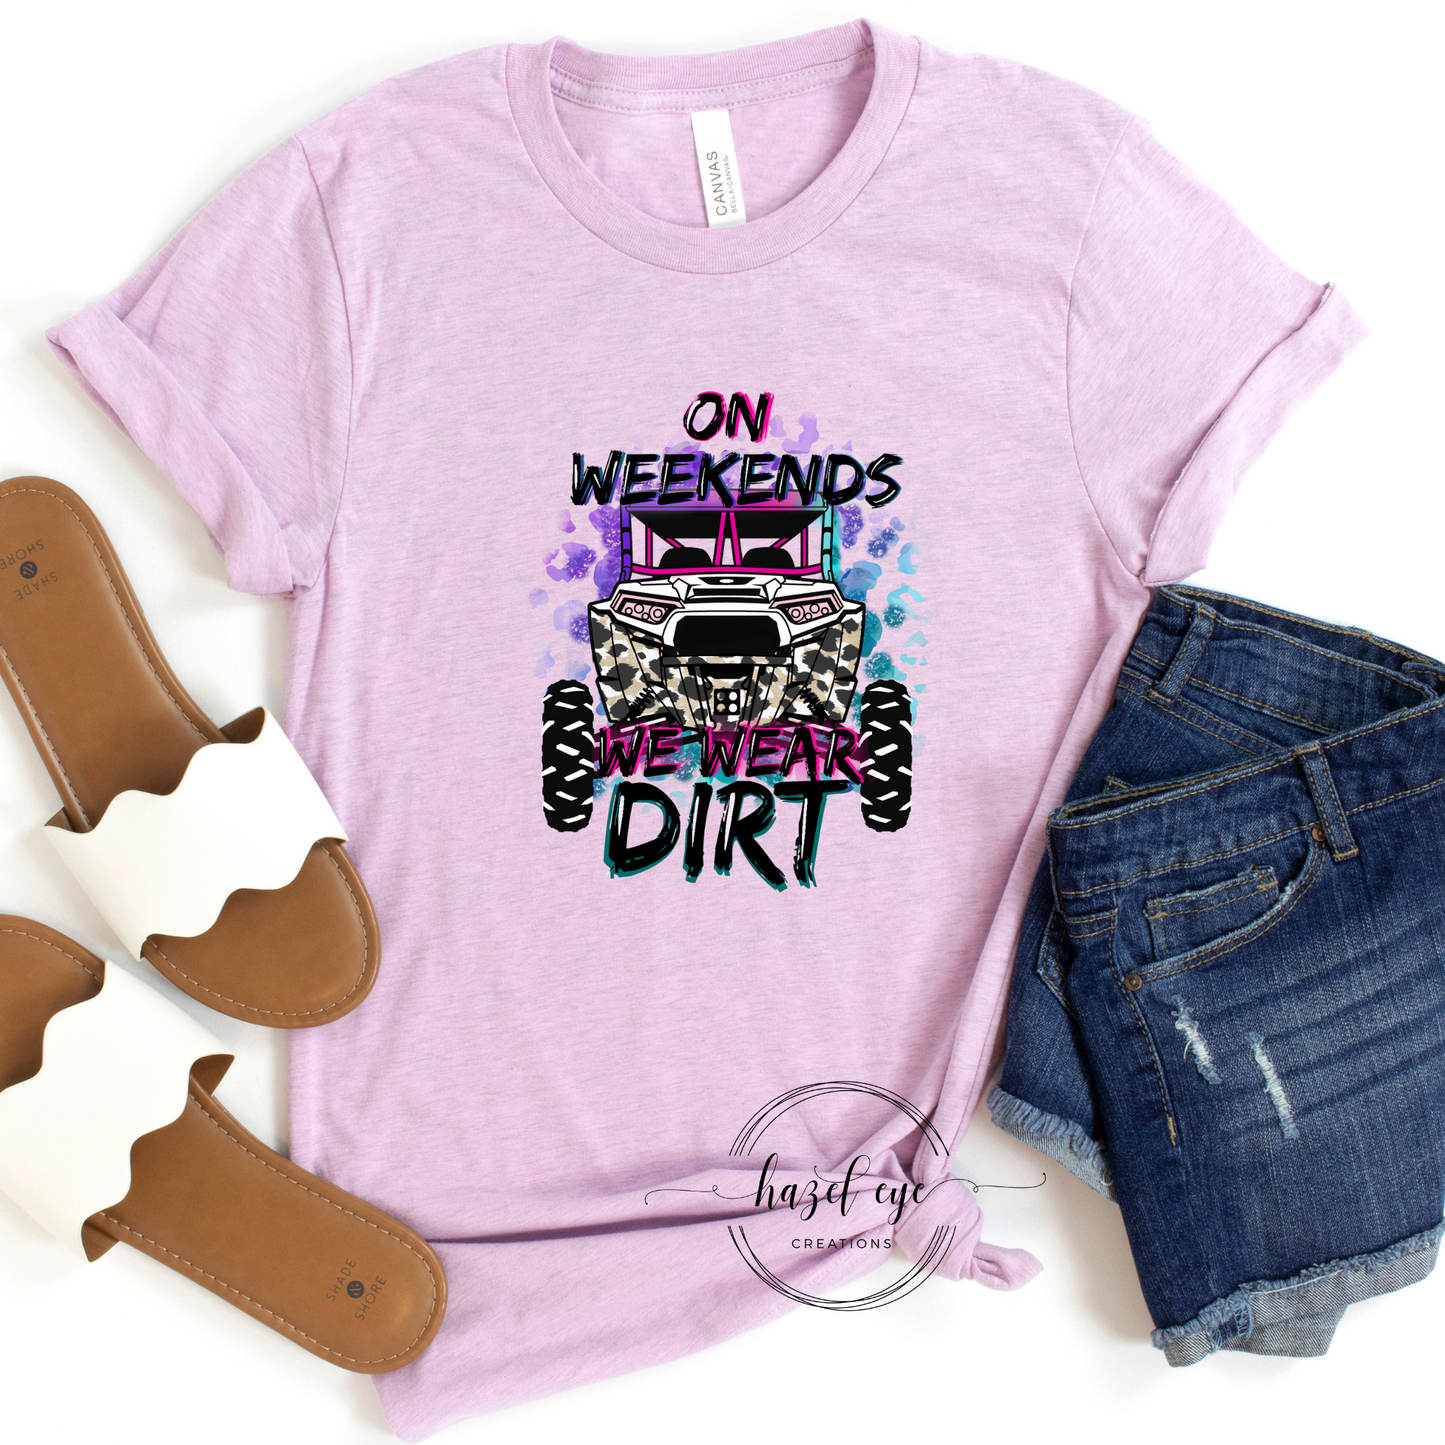 On weekends we wear dirt